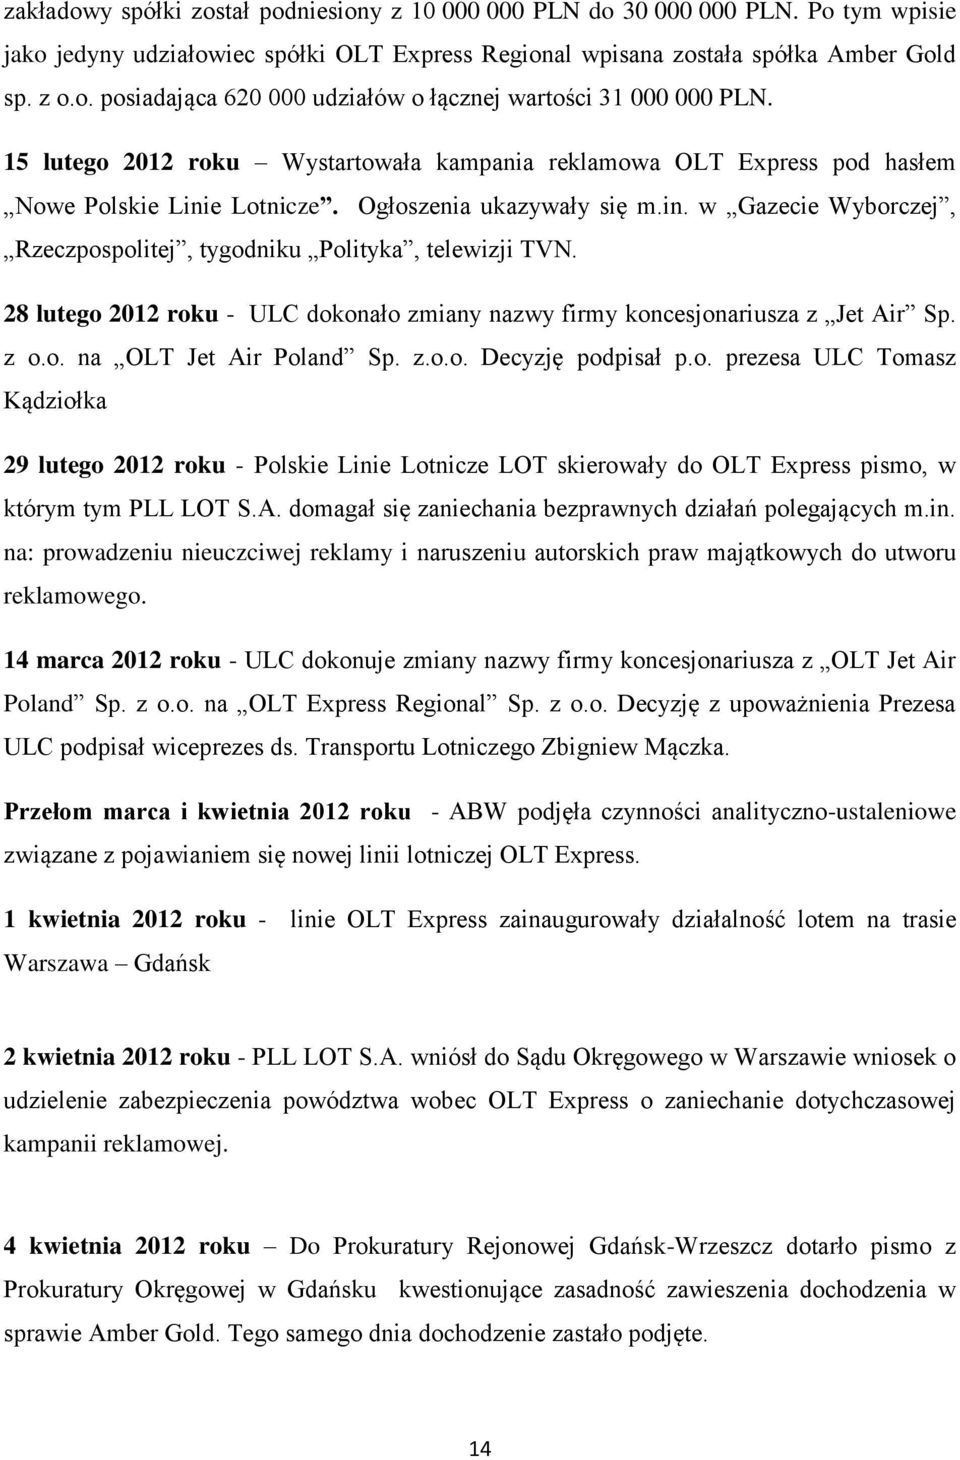 28 lutego 2012 roku - ULC dokonało zmiany nazwy firmy koncesjonariusza z Jet Air Sp. z o.o. na OLT Jet Air Poland Sp. z.o.o. Decyzję podpisał p.o. prezesa ULC Tomasz Kądziołka 29 lutego 2012 roku - Polskie Linie Lotnicze LOT skierowały do OLT Express pismo, w którym tym PLL LOT S.